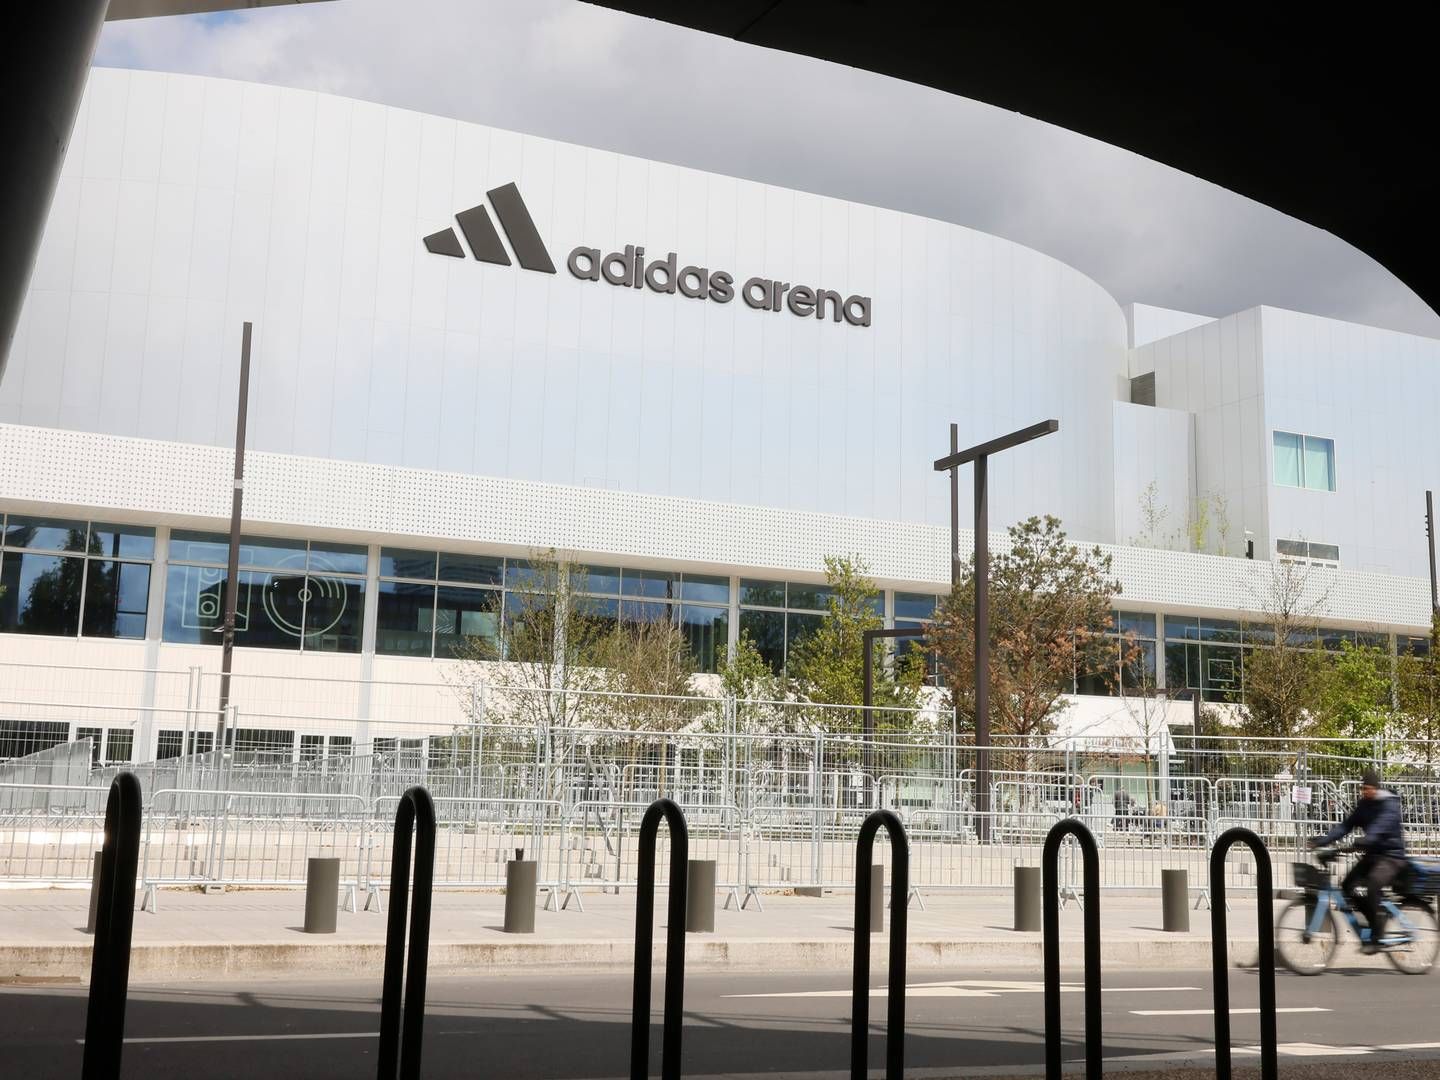 Adidas gjør styreendringer i Norge. Her utenfor nye Adidas Arena i Paris, som har blir bygget for sommer-OL i 2024. | Foto: Thomas Padilla / AP